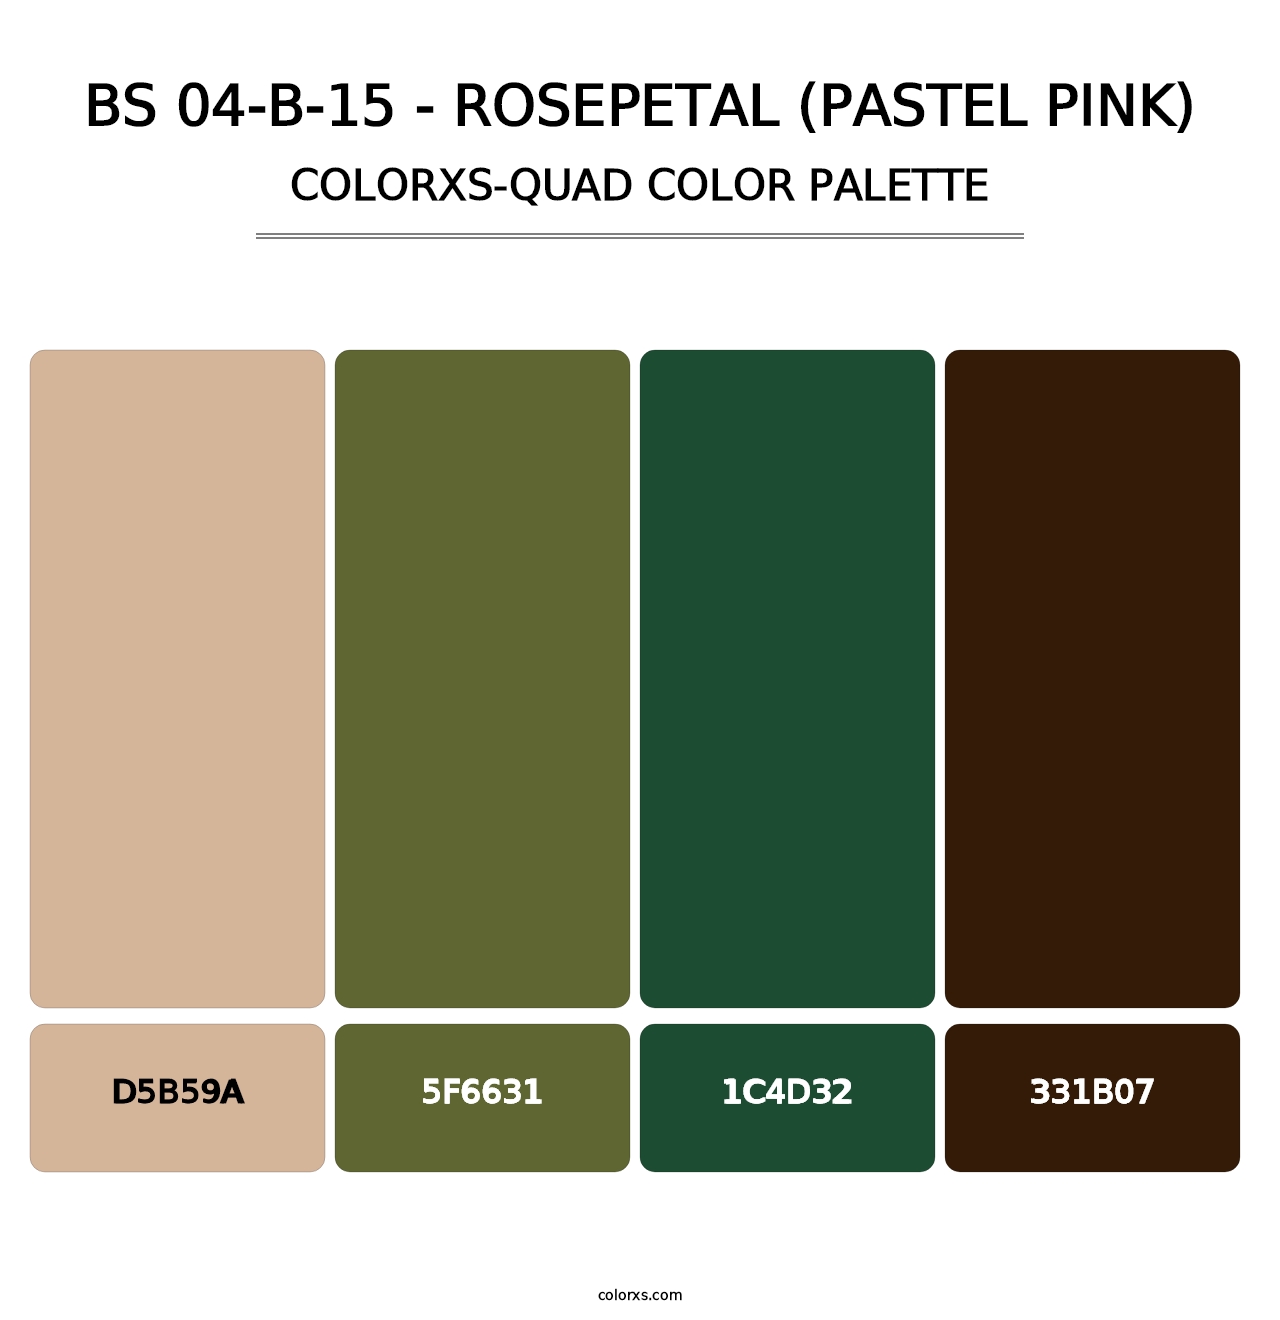 BS 04-B-15 - Rosepetal (Pastel Pink) - Colorxs Quad Palette